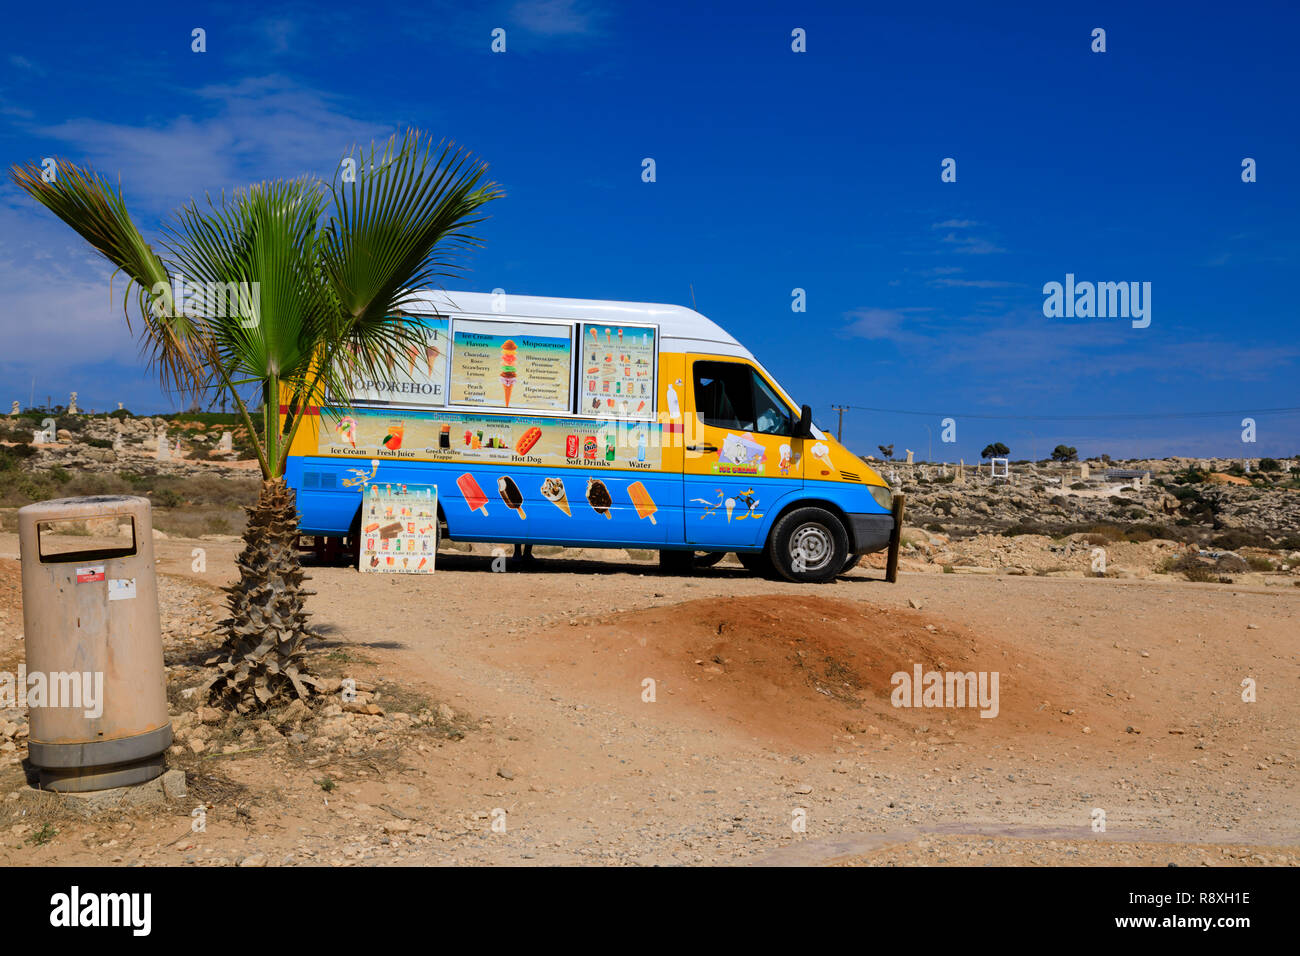 Ice Cream van presso il ponte di amore sito, Ayia Napa, Cipro Ottobre 2018 Foto Stock